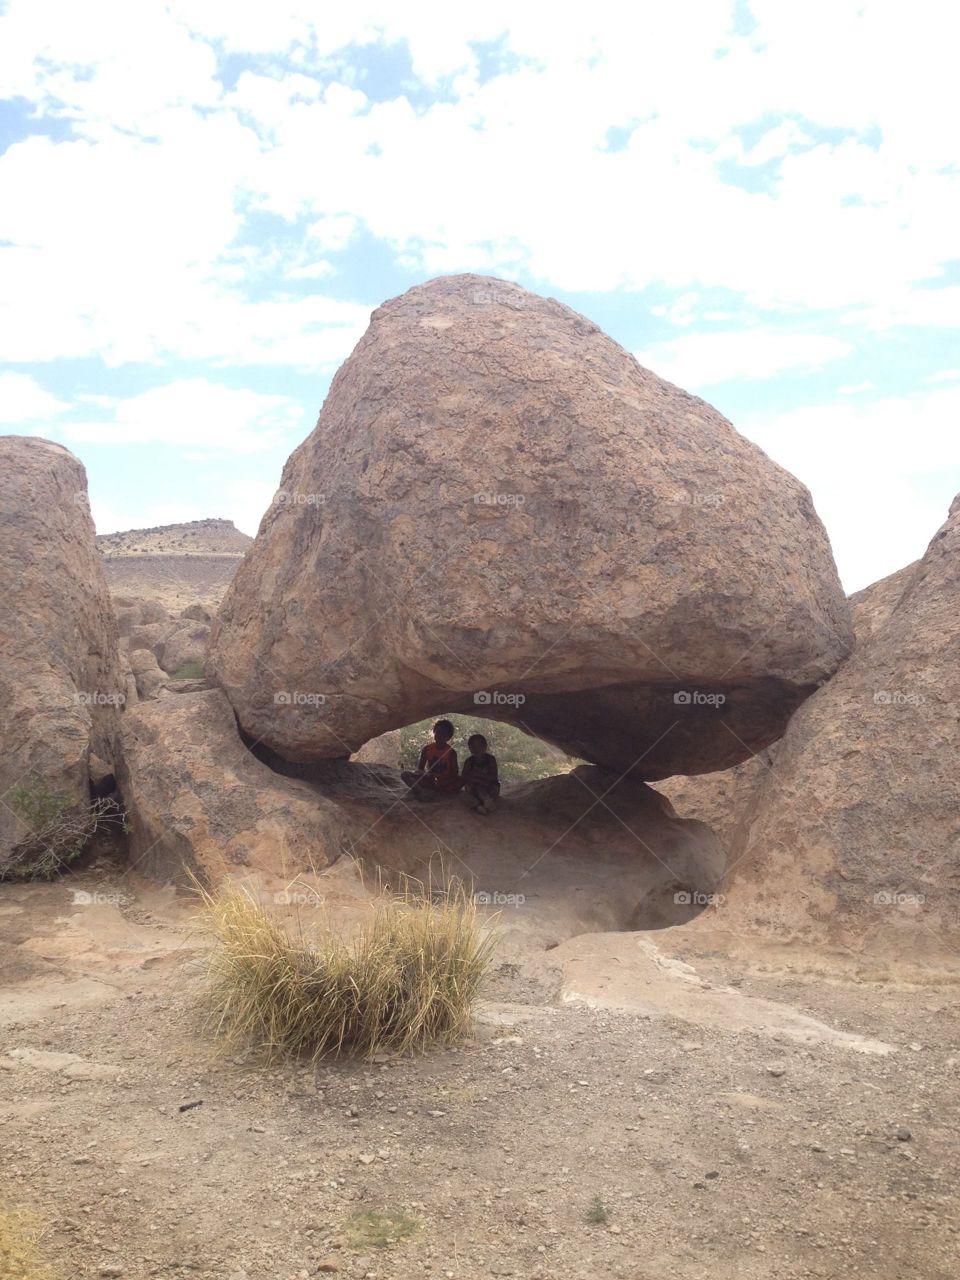 Under the boulder. Kids under a giant boulder 